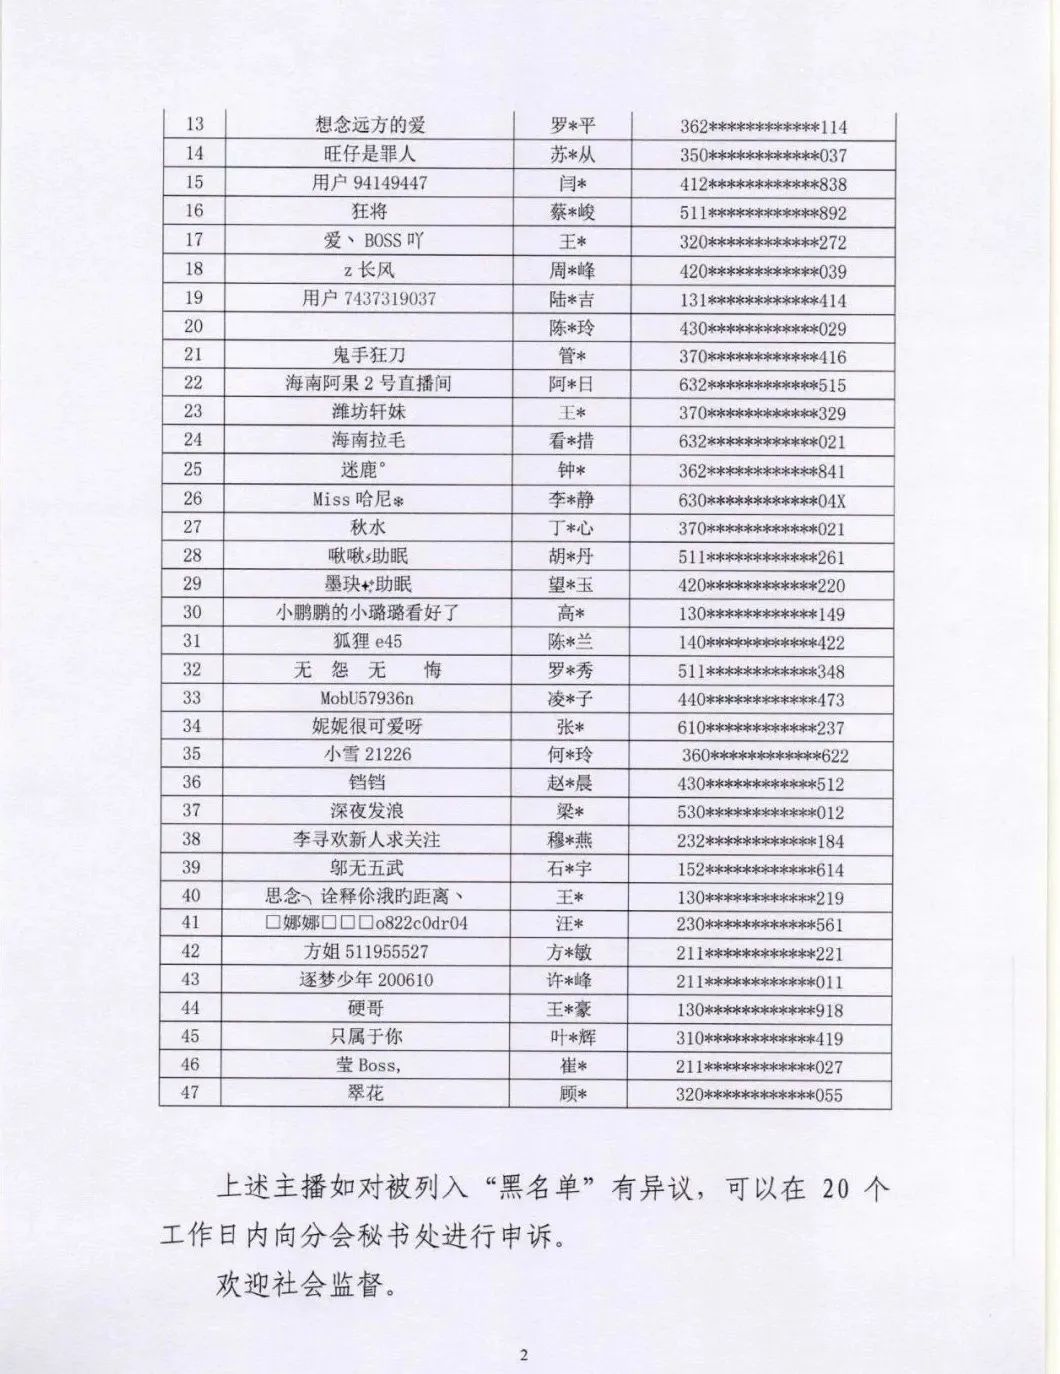 47名主播被列入黑名单；<a href='https://www.zhouxiaohui.cn
' target='_blank'>腾讯直播</a>开启微信社群品牌扶持计划 | 新榜情报-第3张图片-周小辉博客